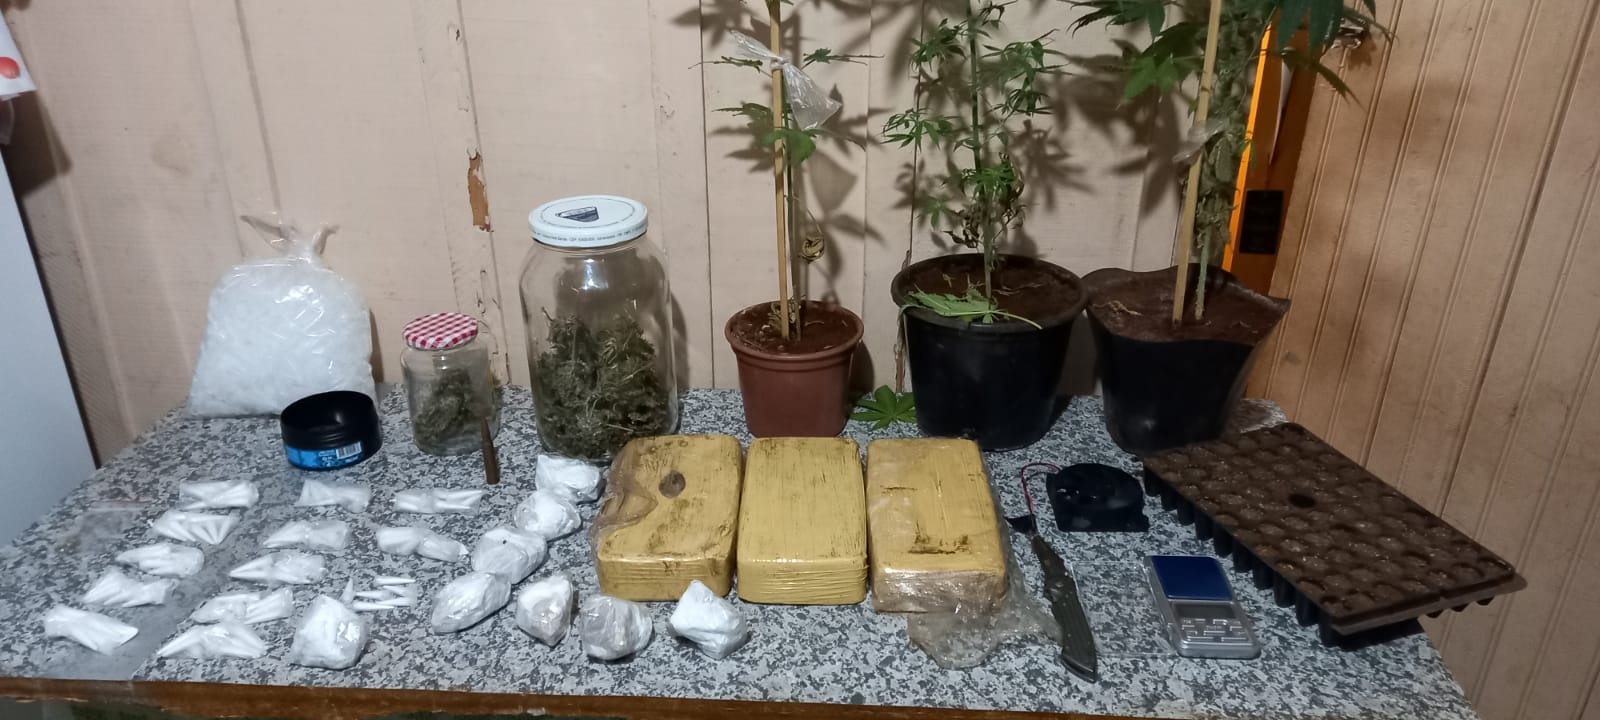 GCM de Itararé (SP) prende casal em flagrante com mais de seis quilos de drogas e quatro pés de maconha escondidos em residência